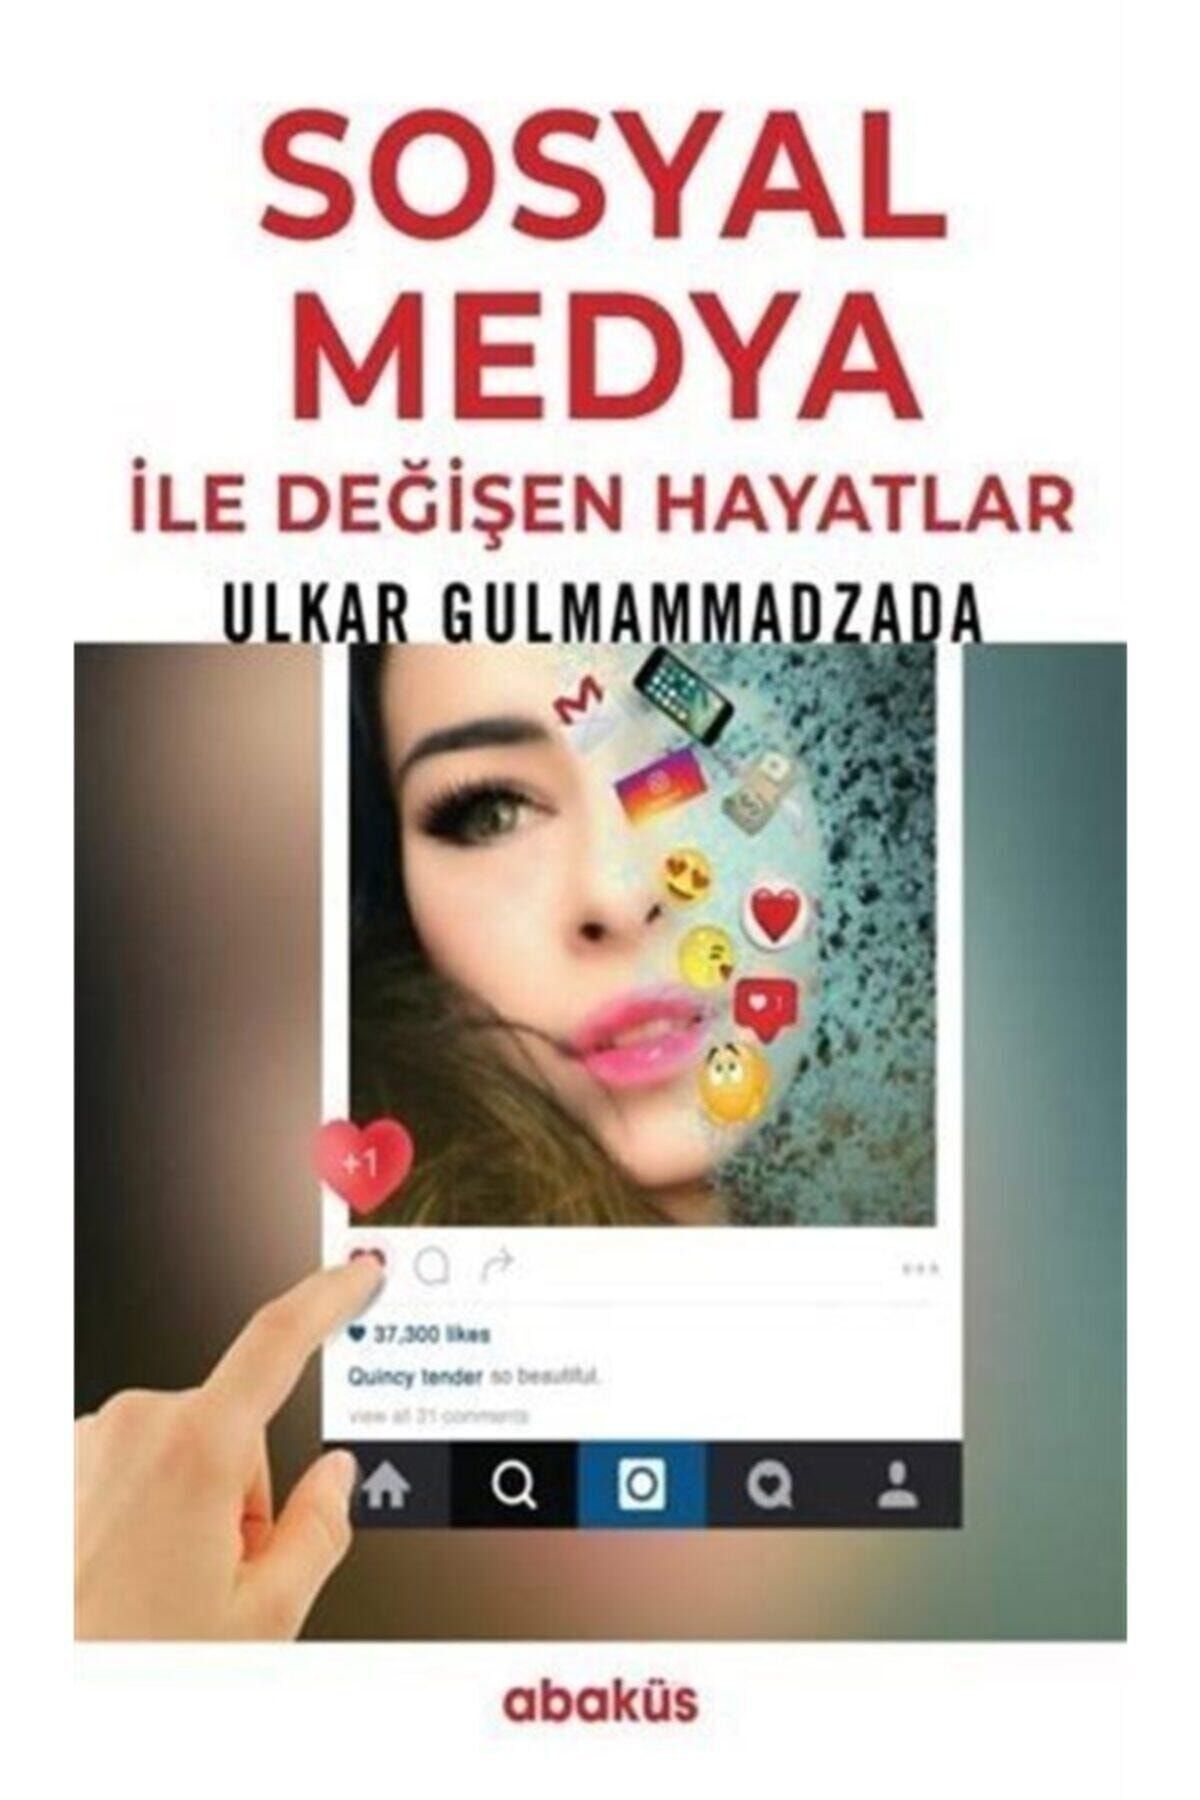 Abaküs Yayınları Sosyal Medya Ile Değişen Hayatlar - - Ulkar Gulmammadzada Kitabı